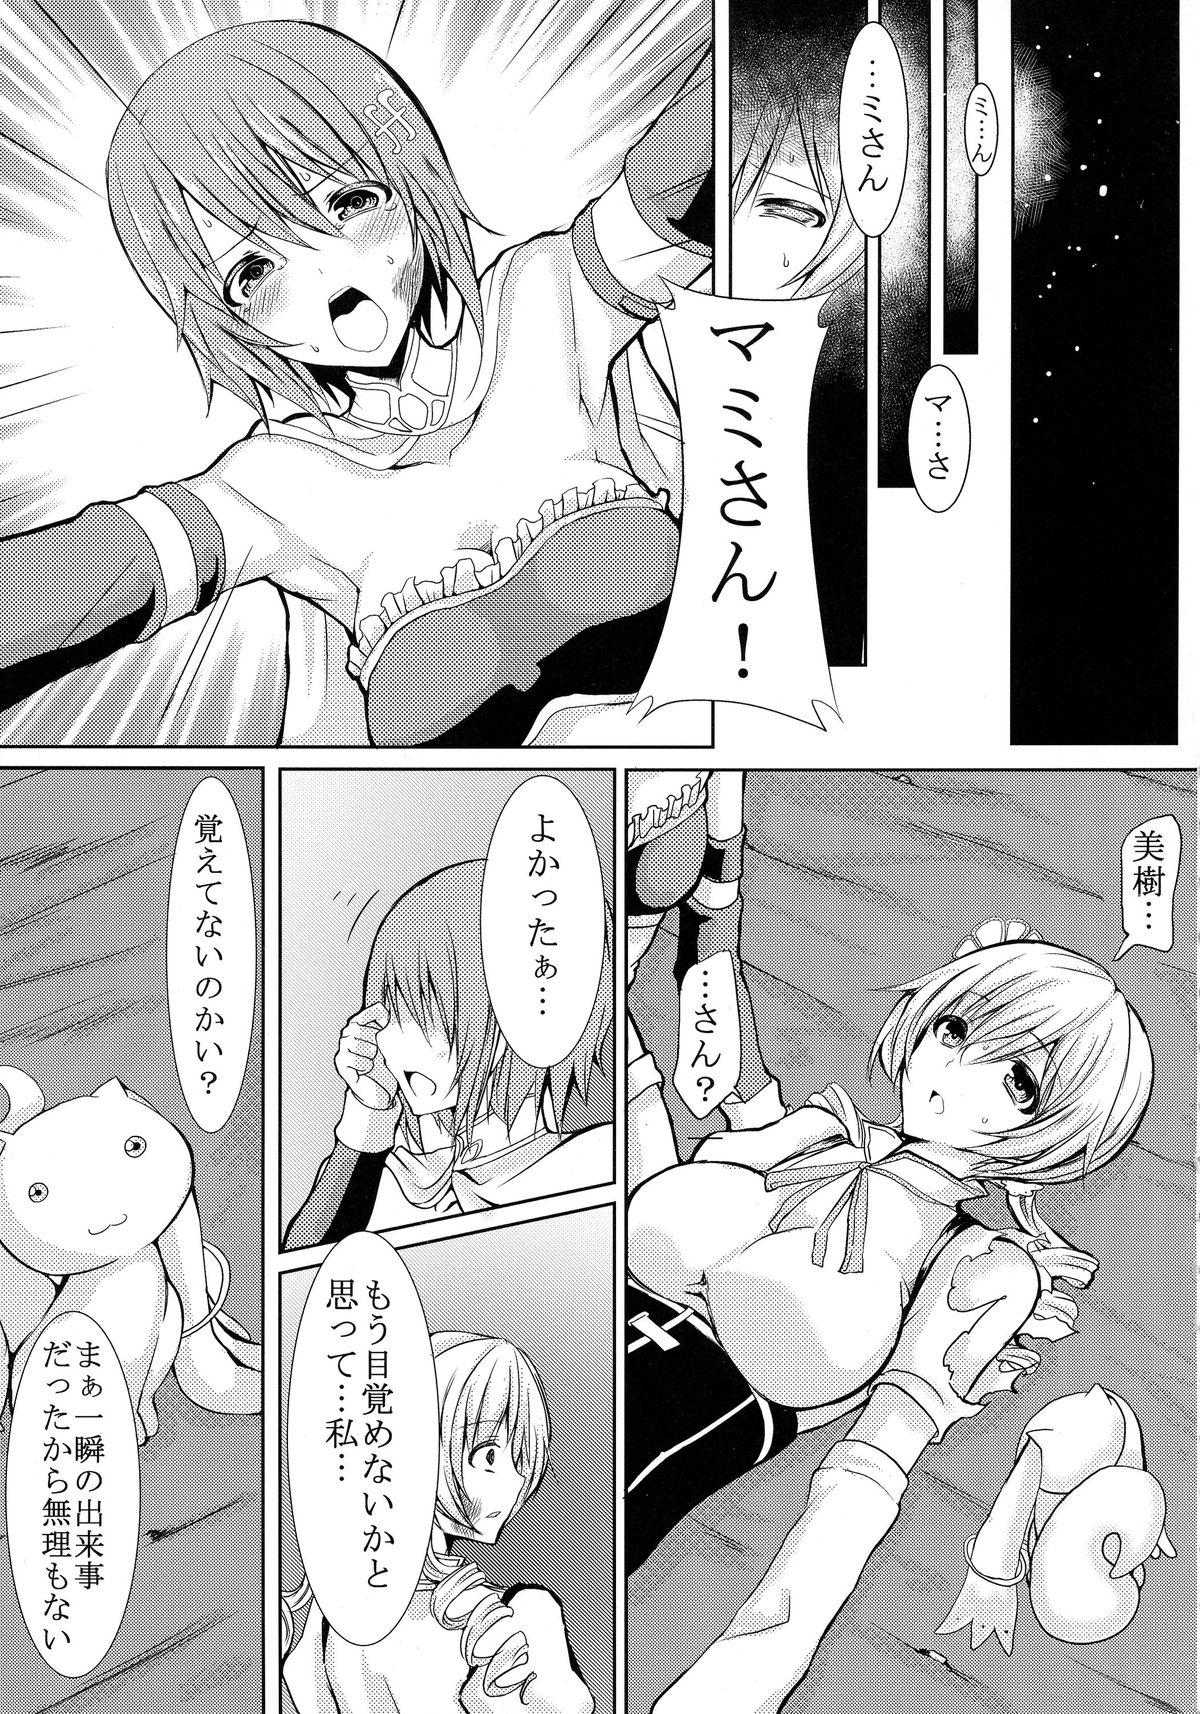 Str8 possessive - Puella magi madoka magica Girlfriend - Page 5